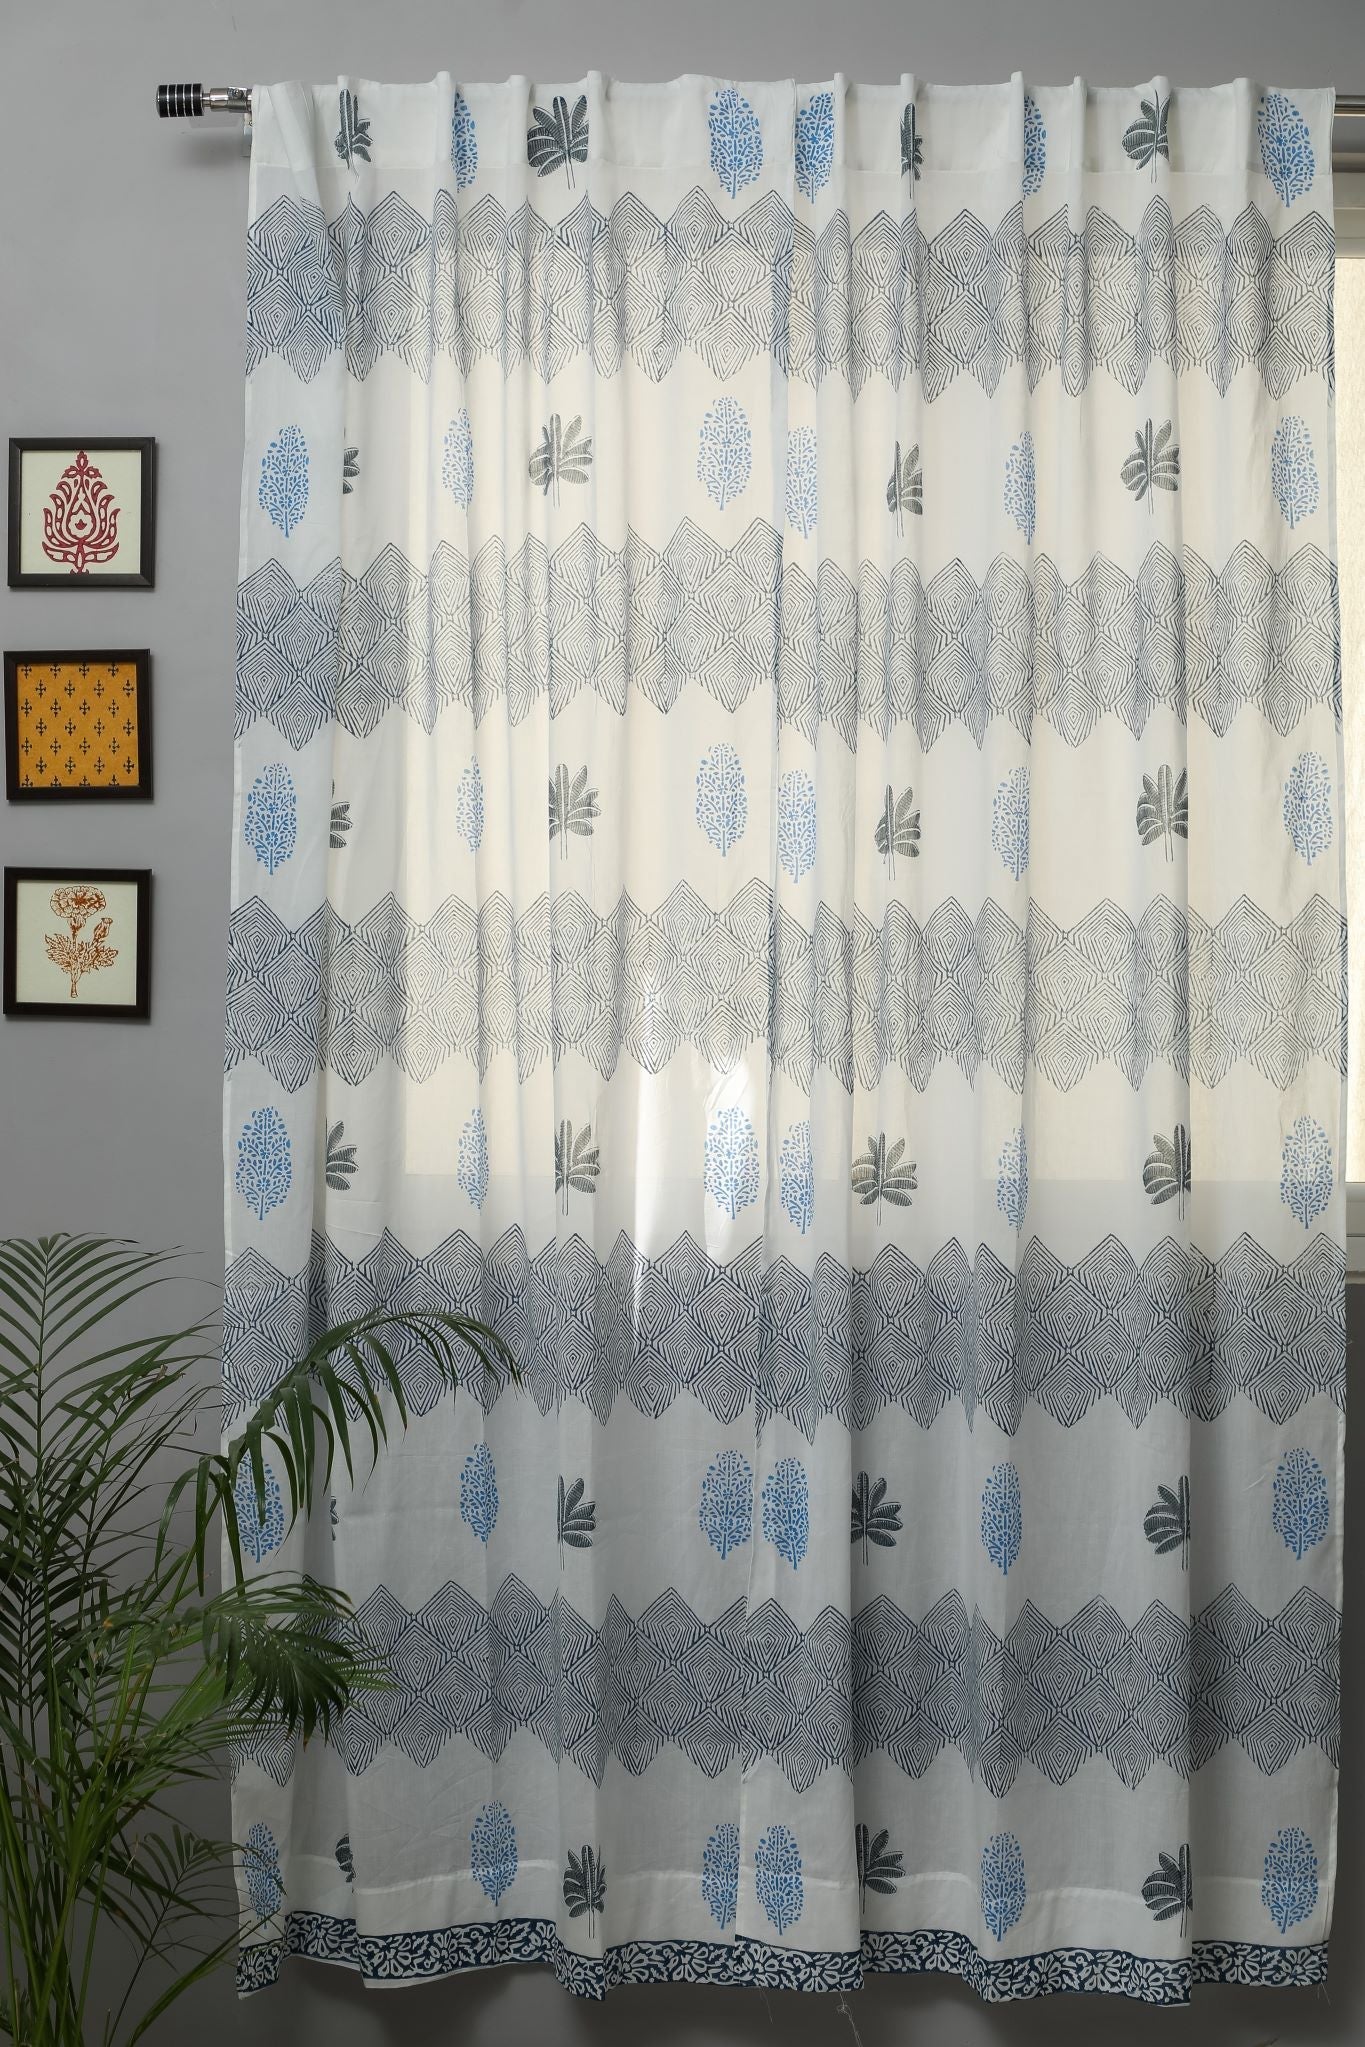 SootiSyahi 'Weddell Blue' Handblock Printed Cotton Door Curtain - SootiSyahi